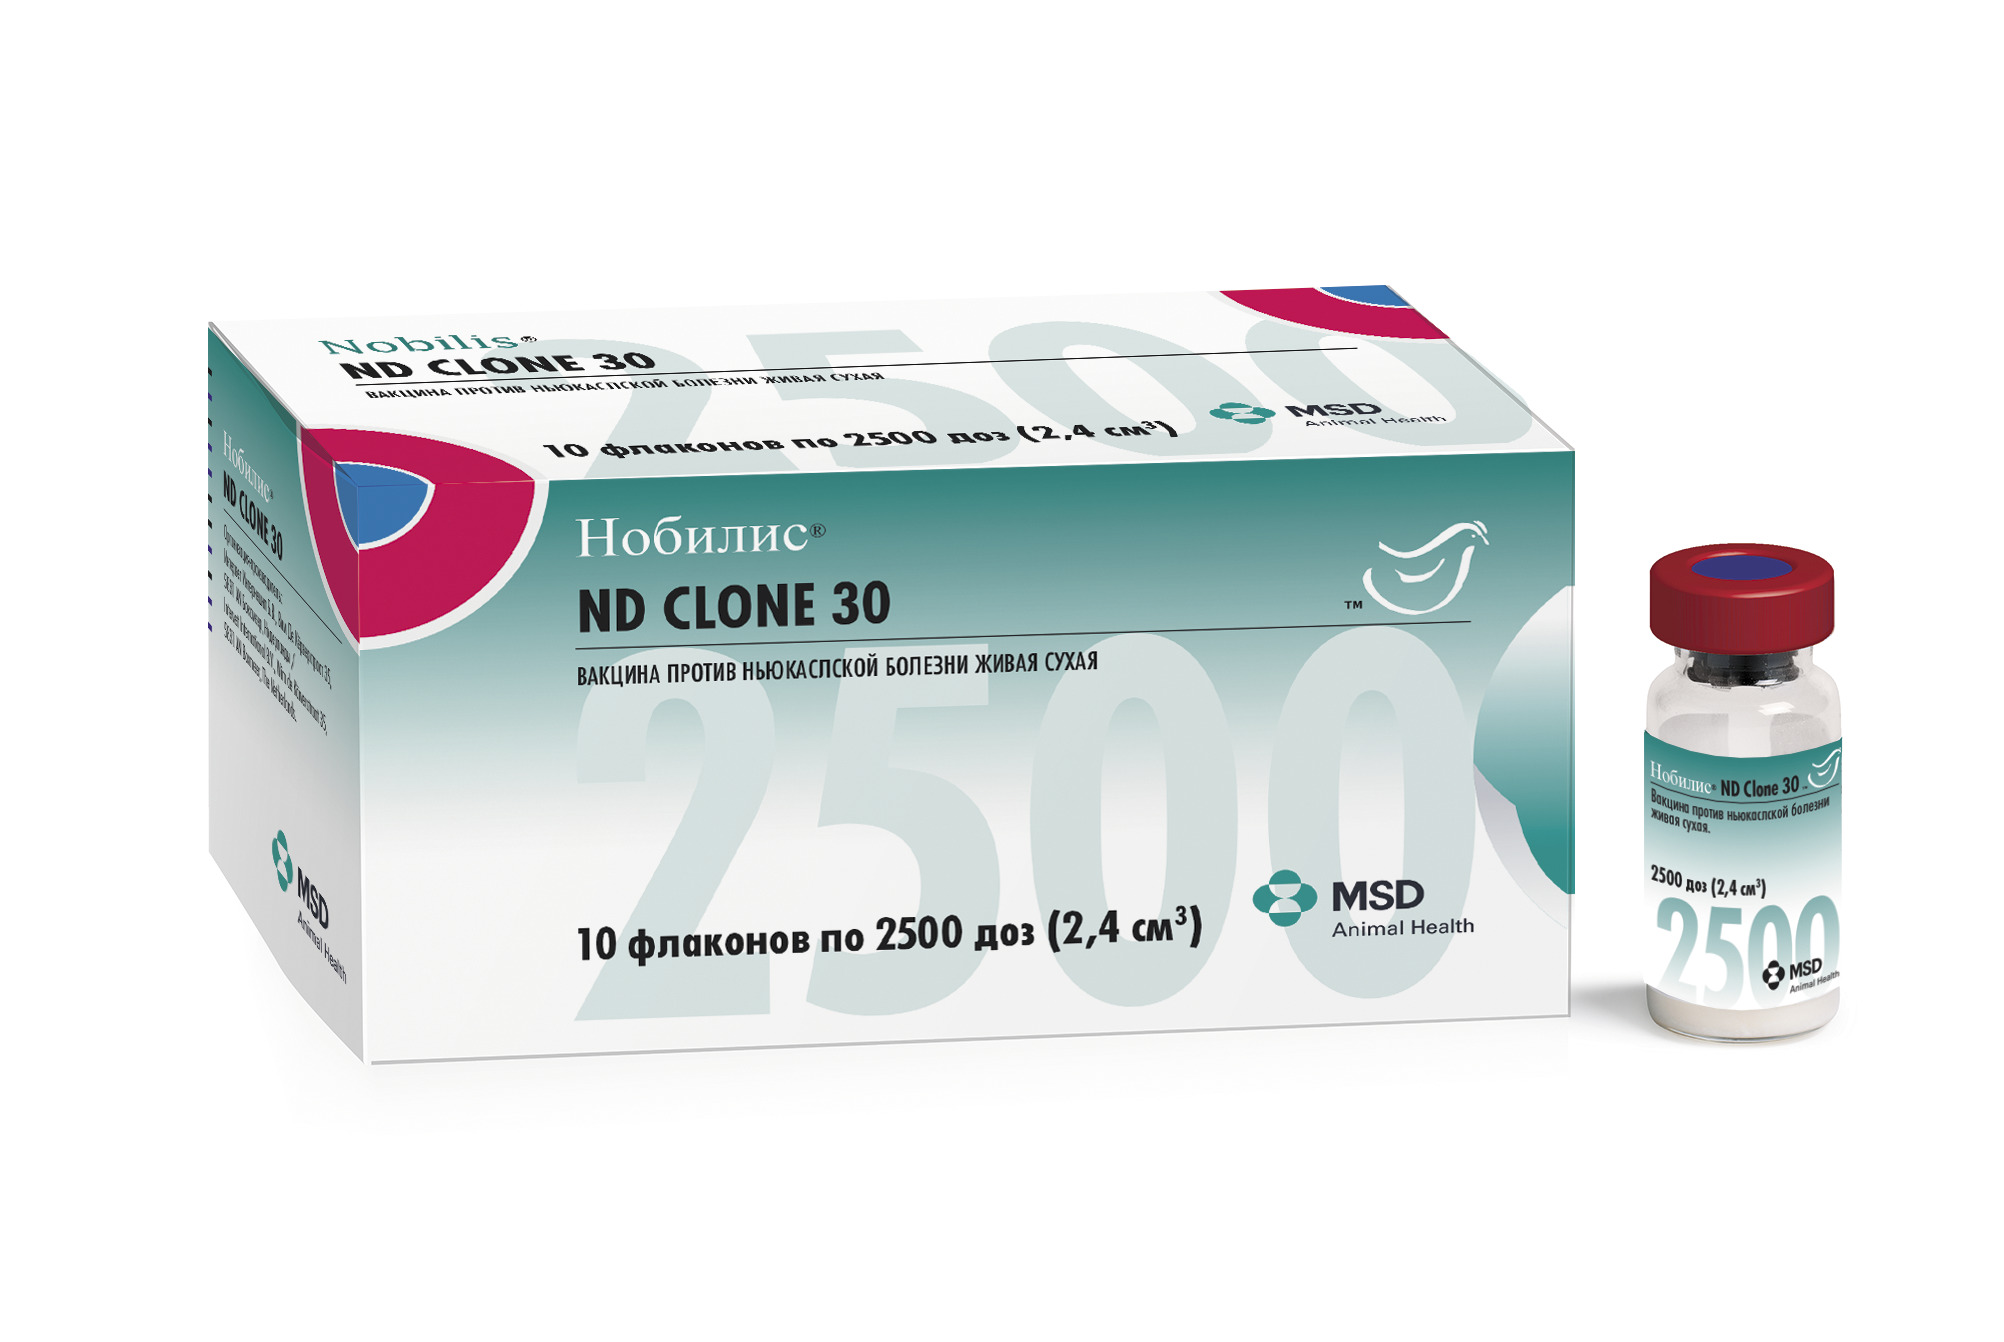 Против ньюкаслской болезни. Вакцина Нобилис клон 30. Нобилис ND Clone 30 (Nobilis ND Clone 30). Нобилис Гамборо 228е. Нобилис клон 30 вакцина Малайзия.